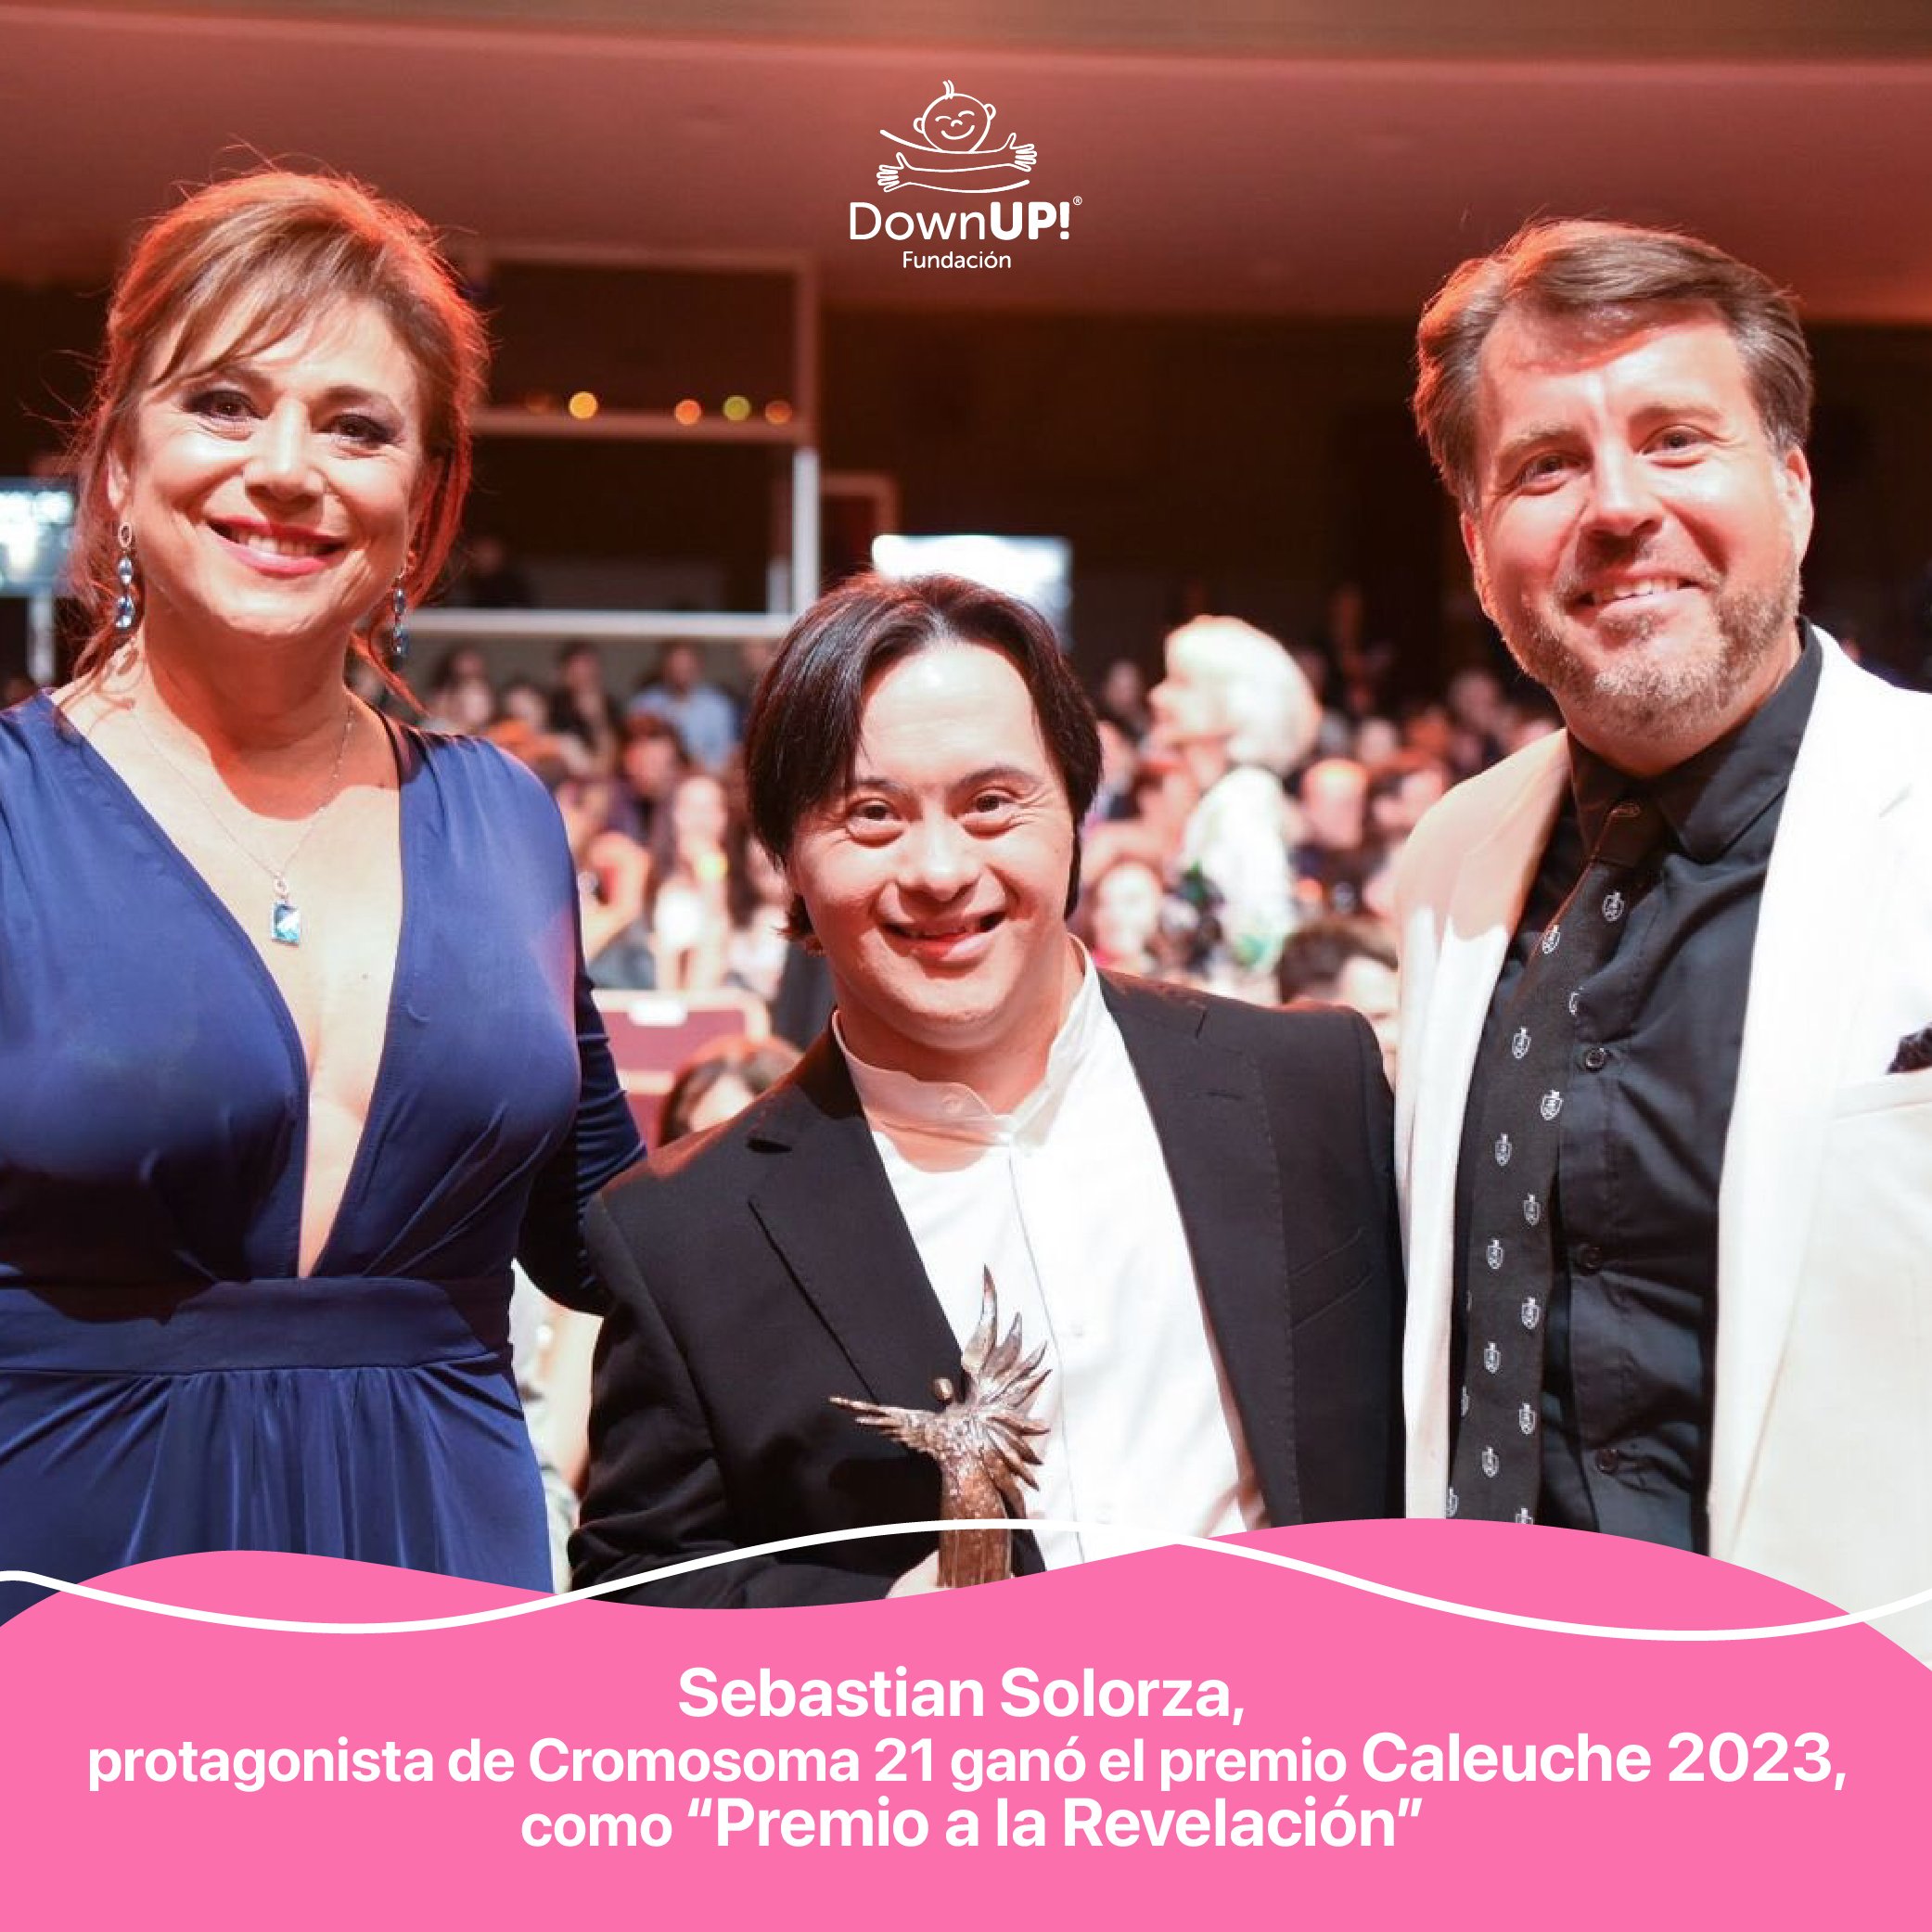 Felices despertamos con la noticia de que nuestro amigo Sebastian Solorza, protagonista de Cromosoma 21 ganó el premio Caleuche 2023, como “premio a la Revelación